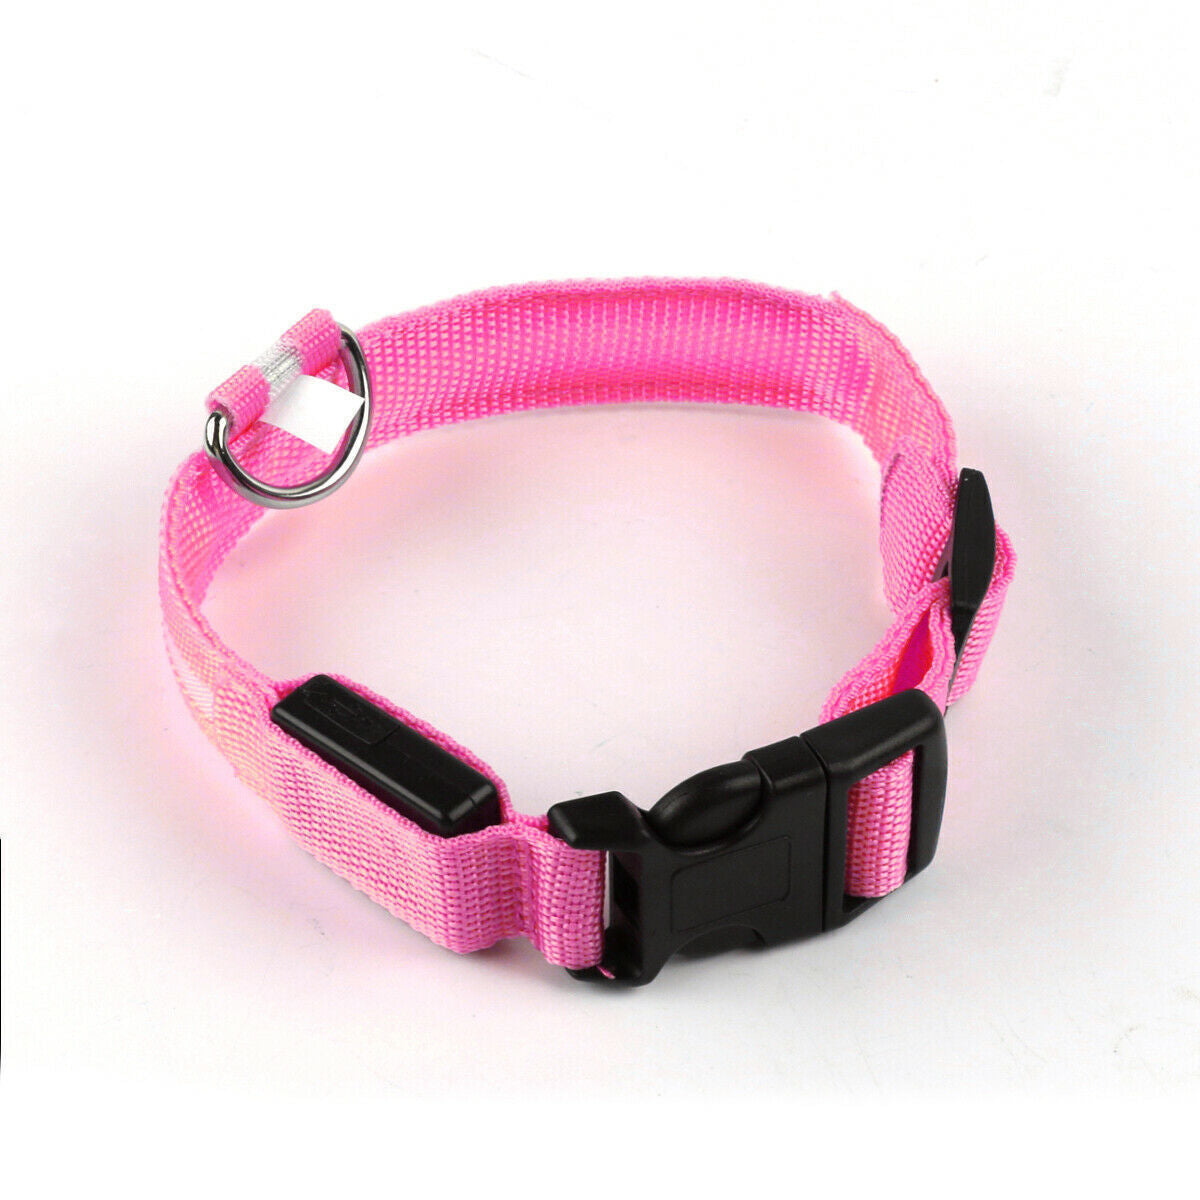 USB Rechargeable LED Pet Dog Collar Flashing Luminous Safety Light up Nylon UK